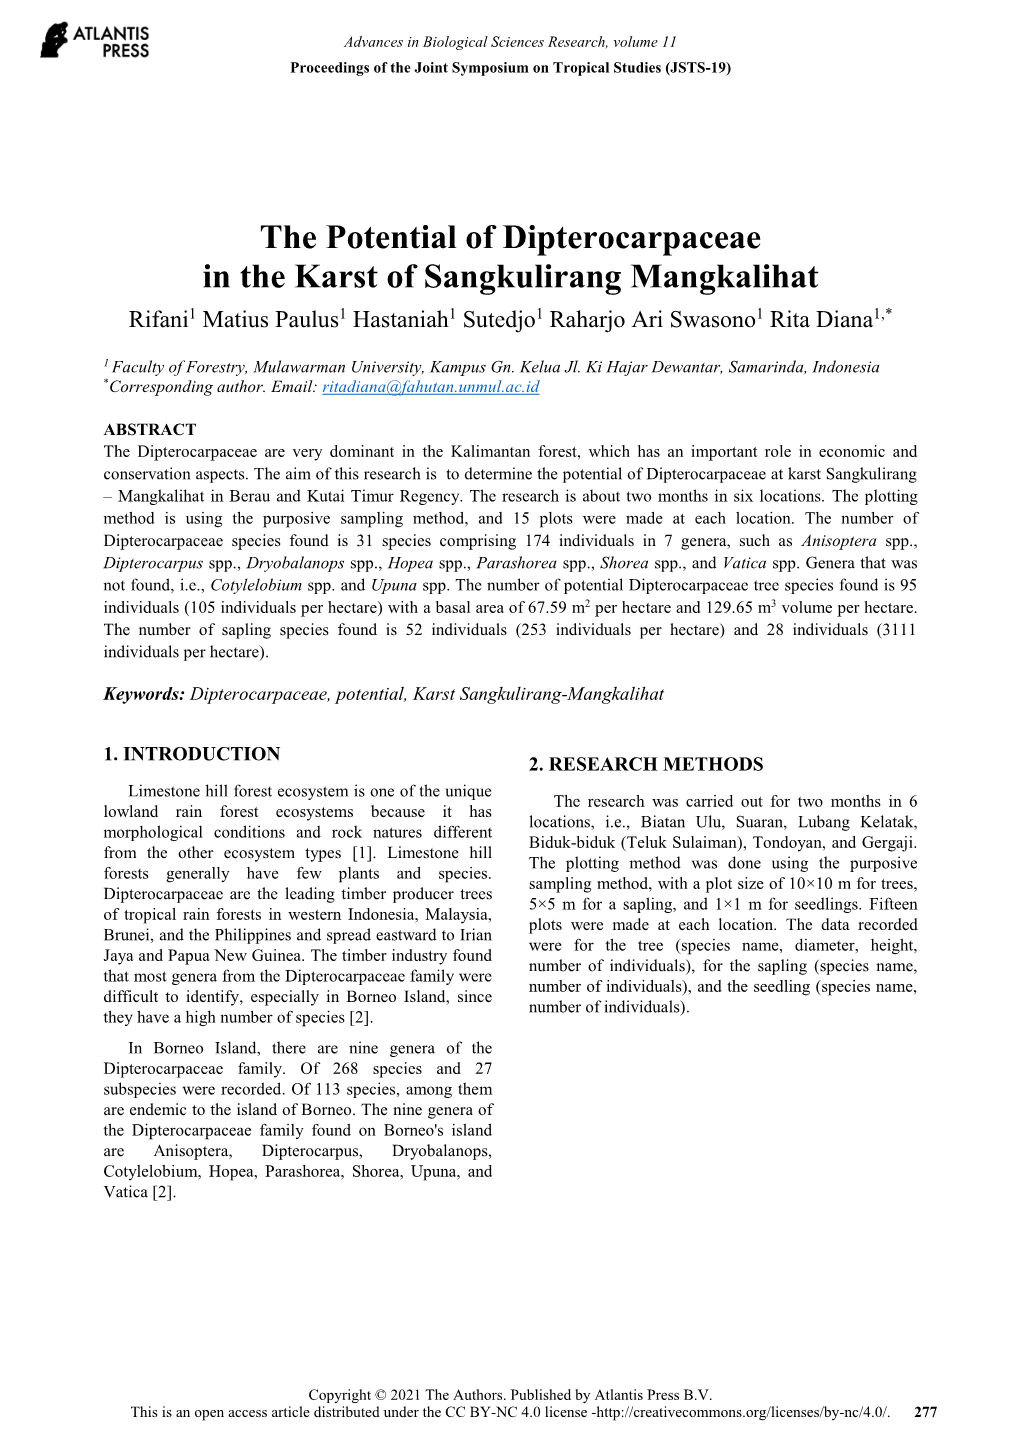 The Potential of Dipterocarpaceae in the Karst of Sangkulirang Mangkalihat Rifani1 Matius Paulus1 Hastaniah1 Sutedjo1 Raharjo Ari Swasono1 Rita Diana1,*